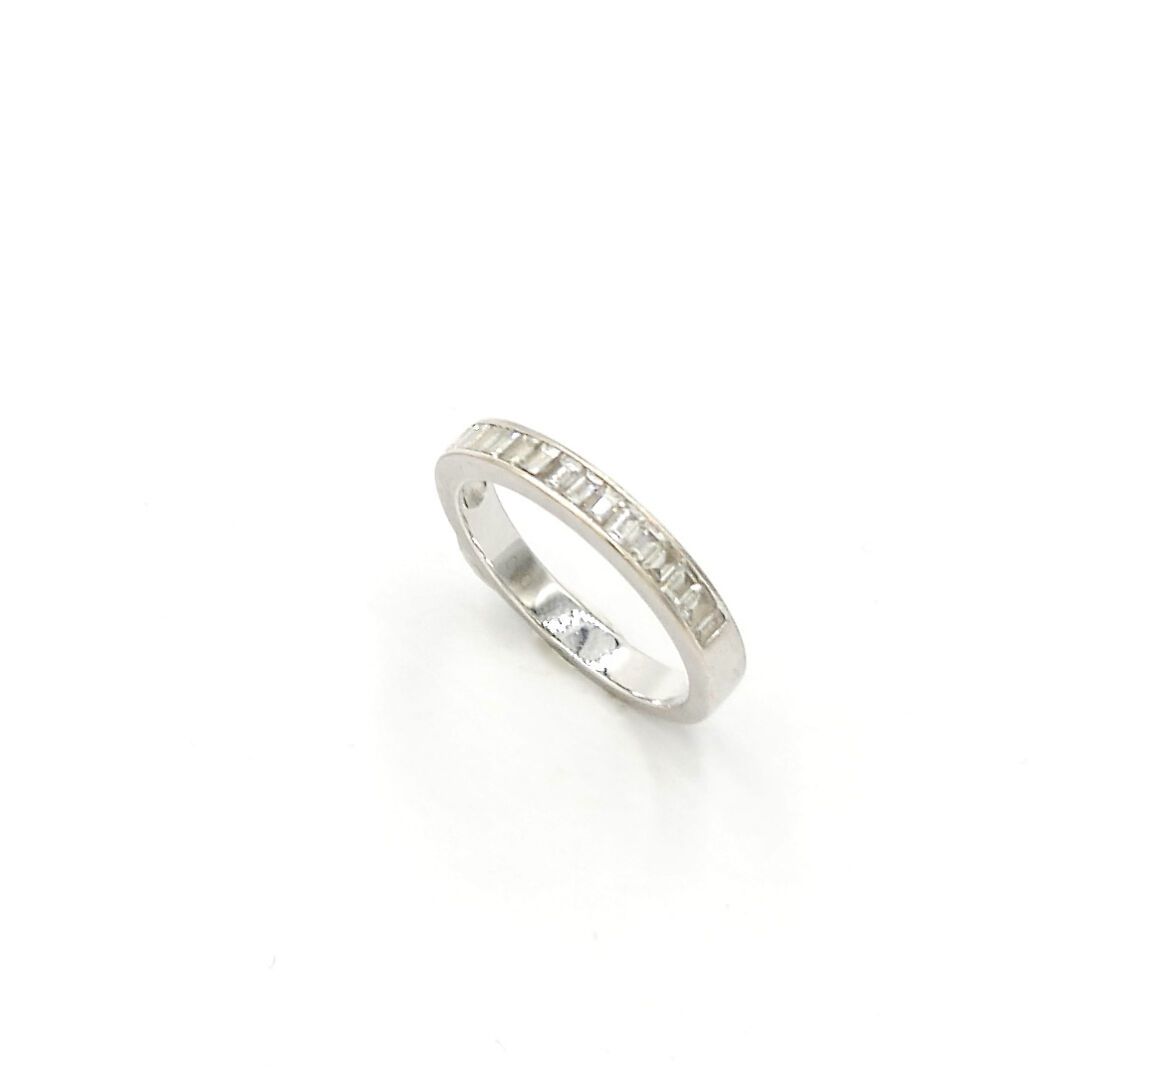 Null 20世纪

美国750/1000白金半身结婚戒指，镶嵌长方形切割钻石

毛重：3.7克。

手指大小：54



使用条件